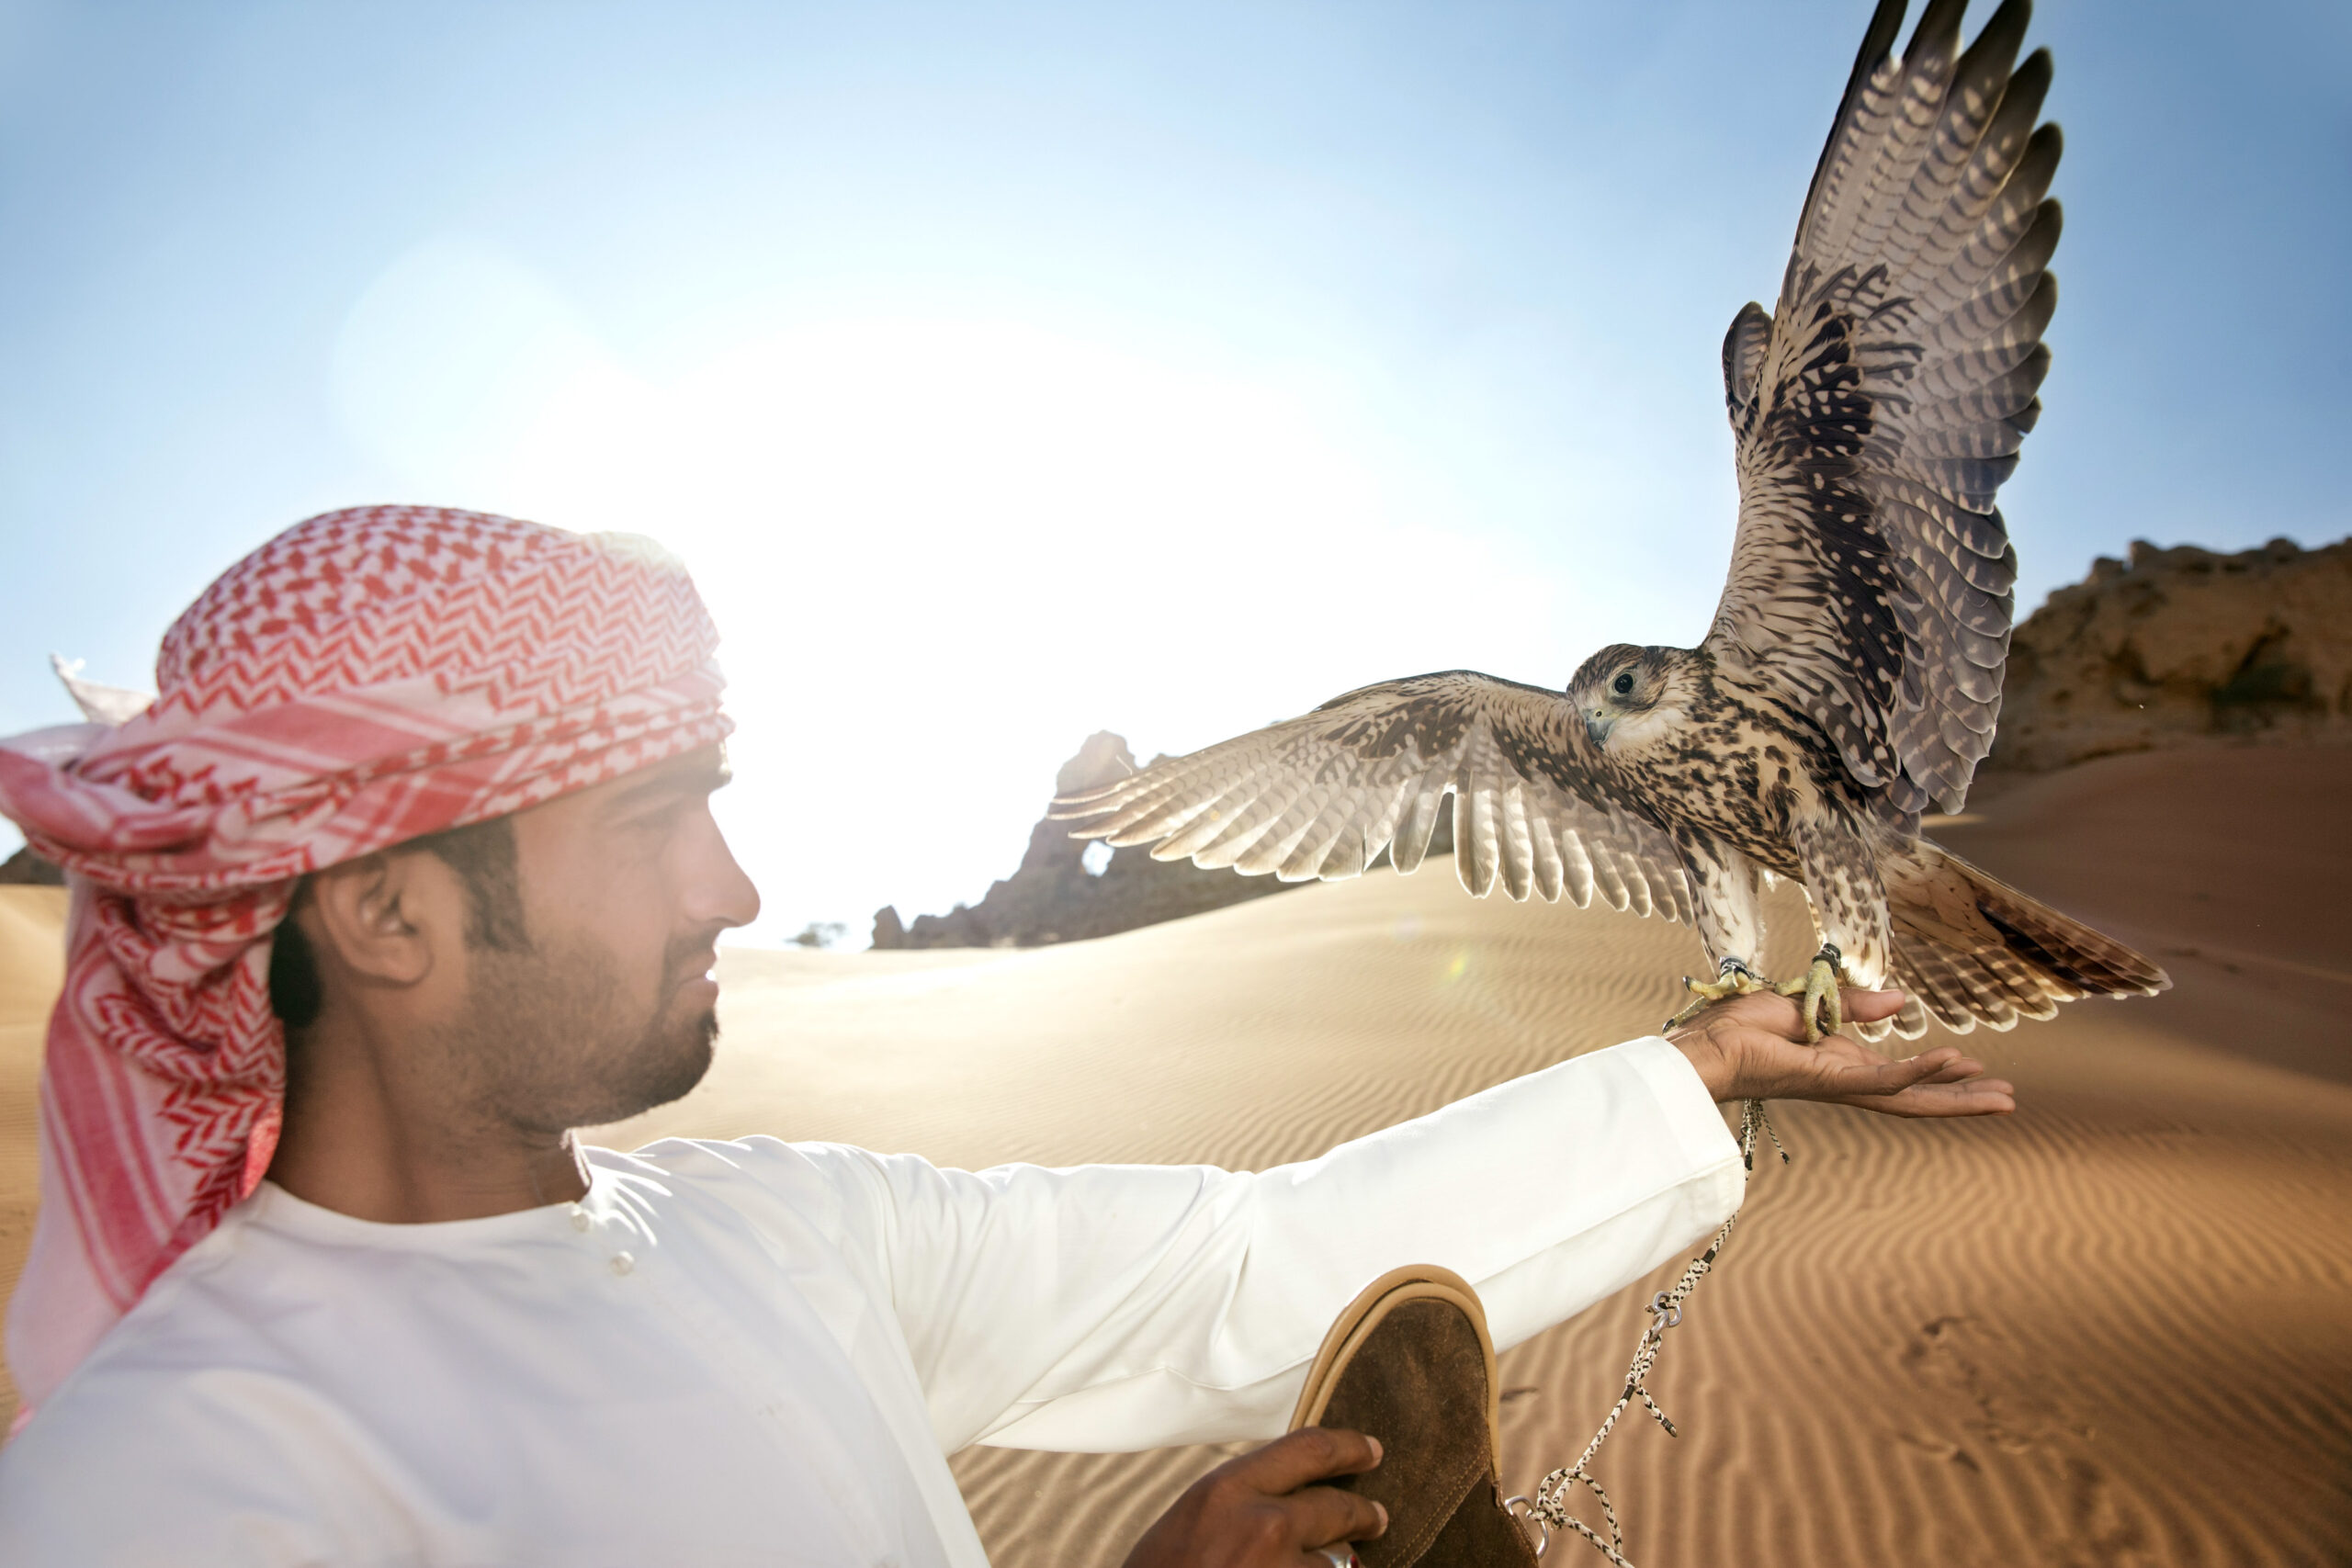 Ein Mann in traditioneller nahöstlicher Kleidung lässt in einer Wüstenlandschaft einen Falken frei; im Hintergrund scheint die Sonne, und Sanddünen sind zu sehen. © Fotografie Tomas Rodriguez